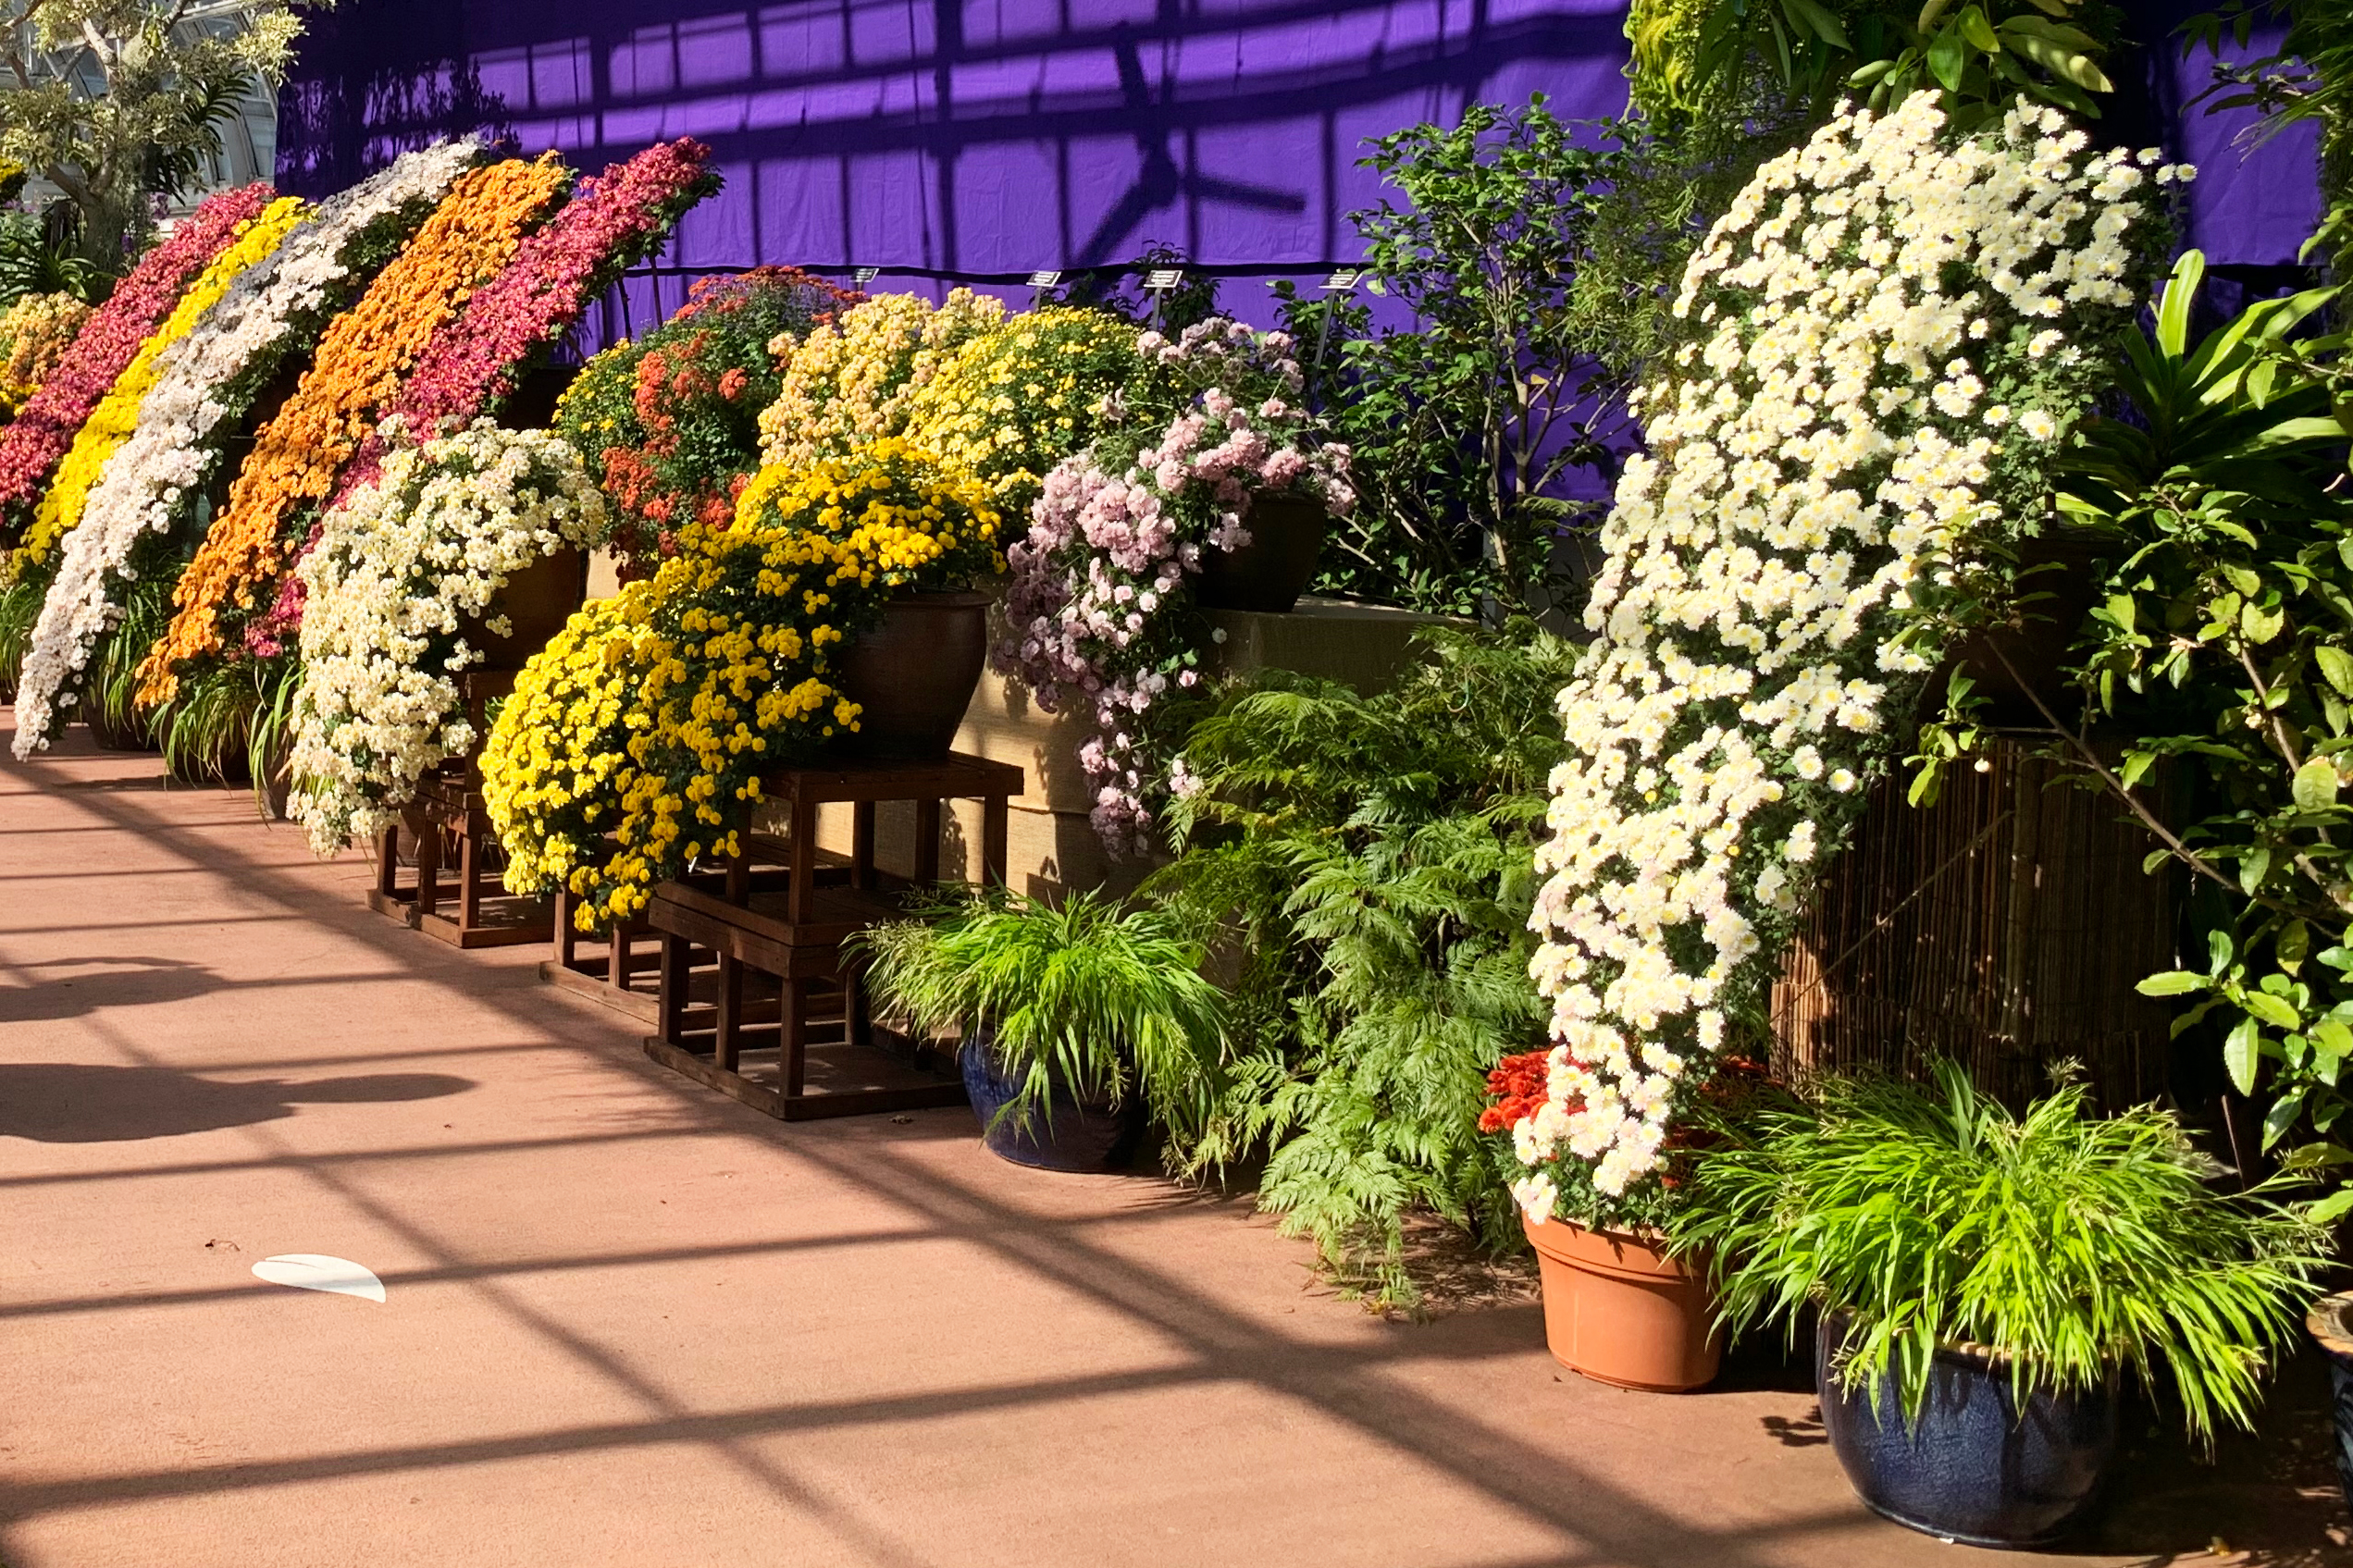 New York Botanical Garden fall kiku chrysanthemum display 2020